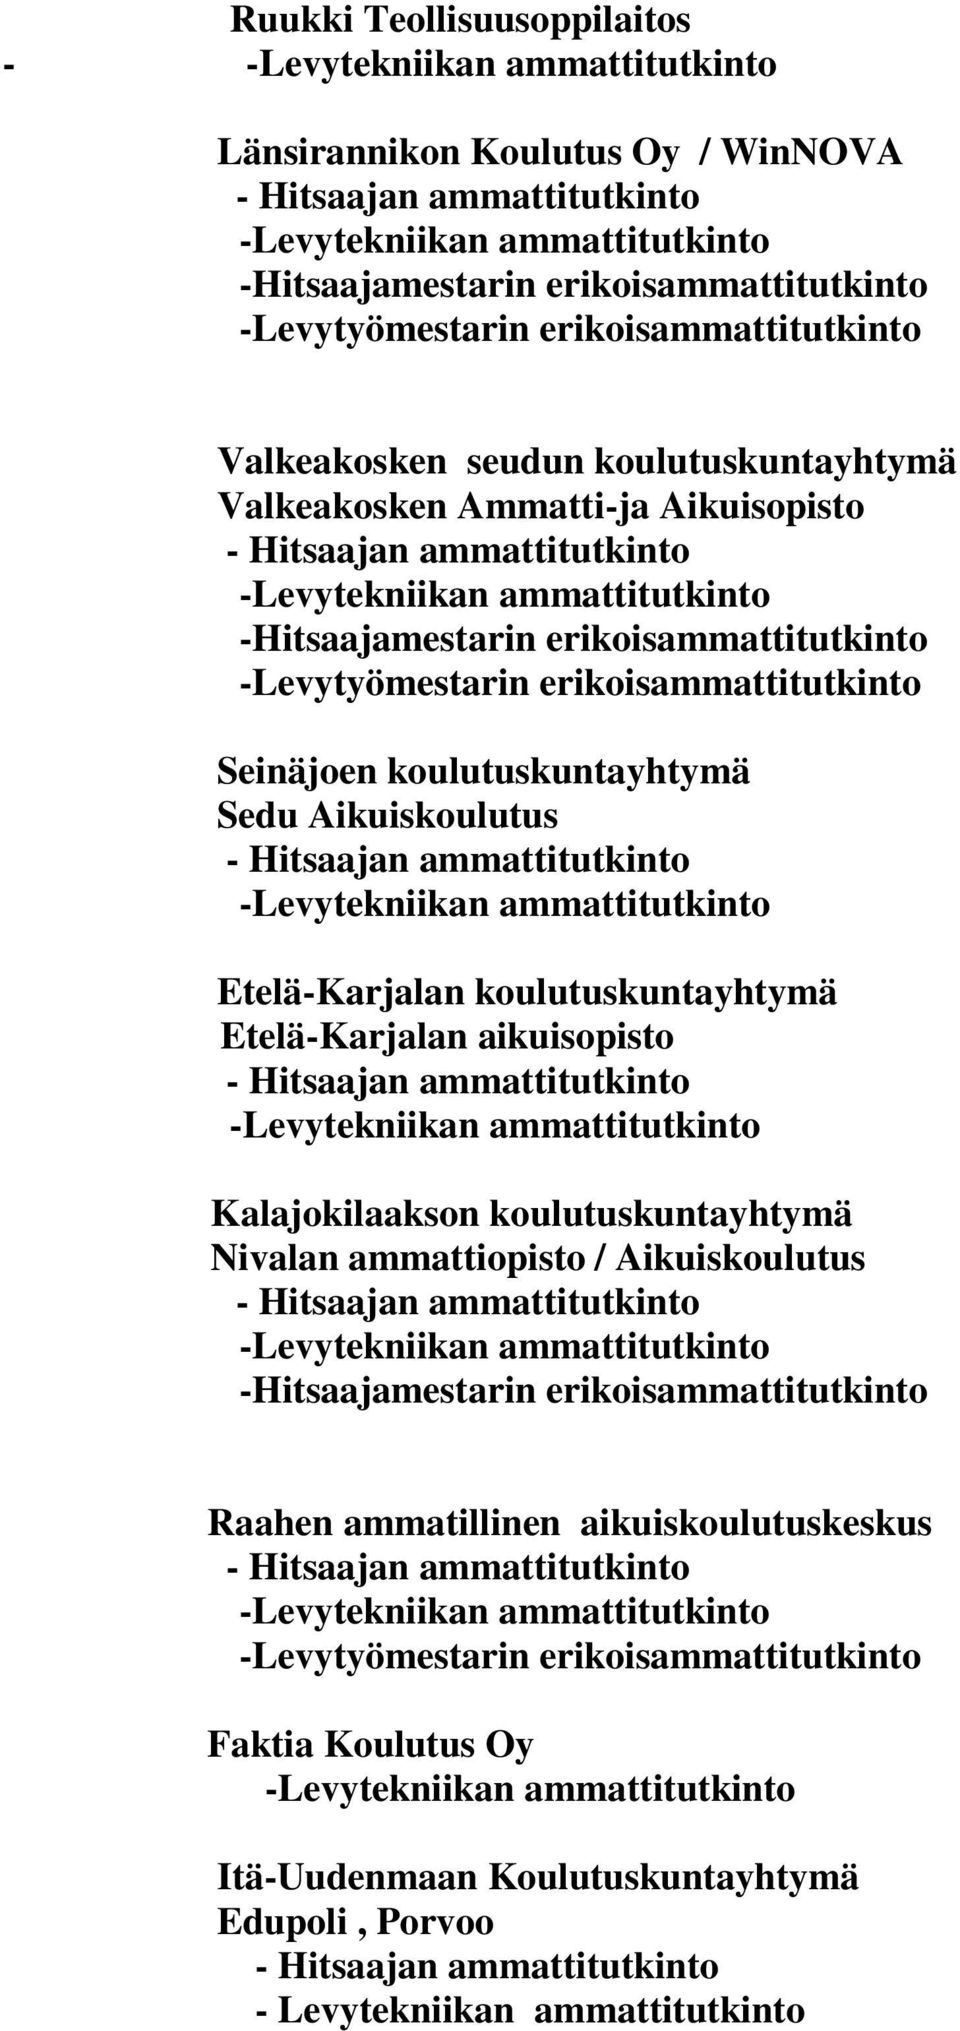 koulutuskuntayhtymä Etelä-Karjalan aikuisopisto Kalajokilaakson koulutuskuntayhtymä Nivalan ammattiopisto /